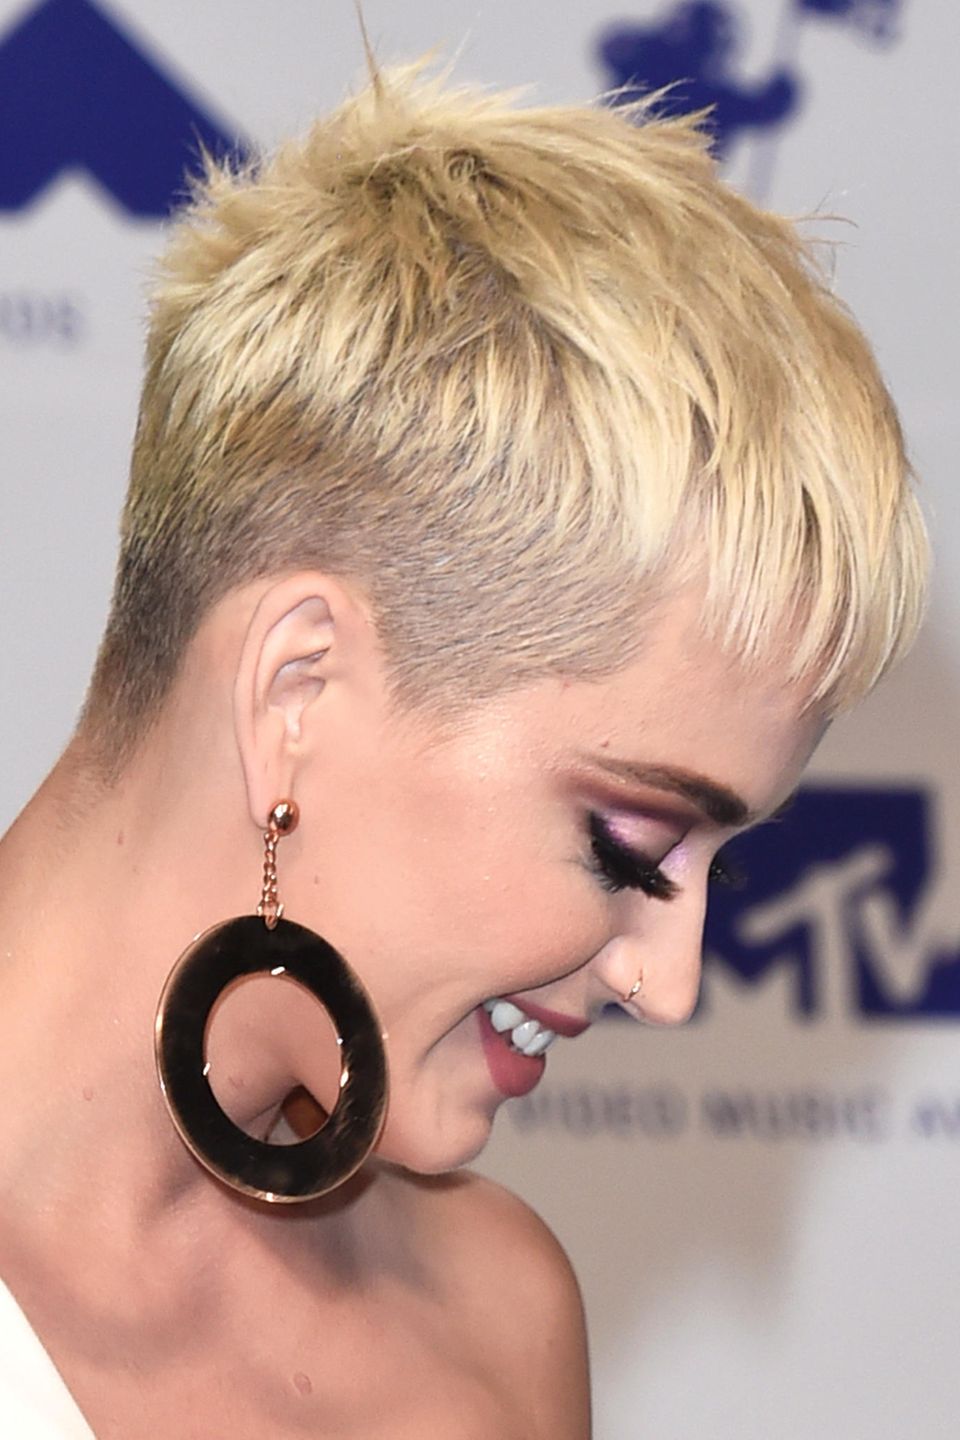 Von der Seite ist deutlich zu sehen, dass sich Katy Perry für einen kurzen Pixie-Cut entschieden hat.